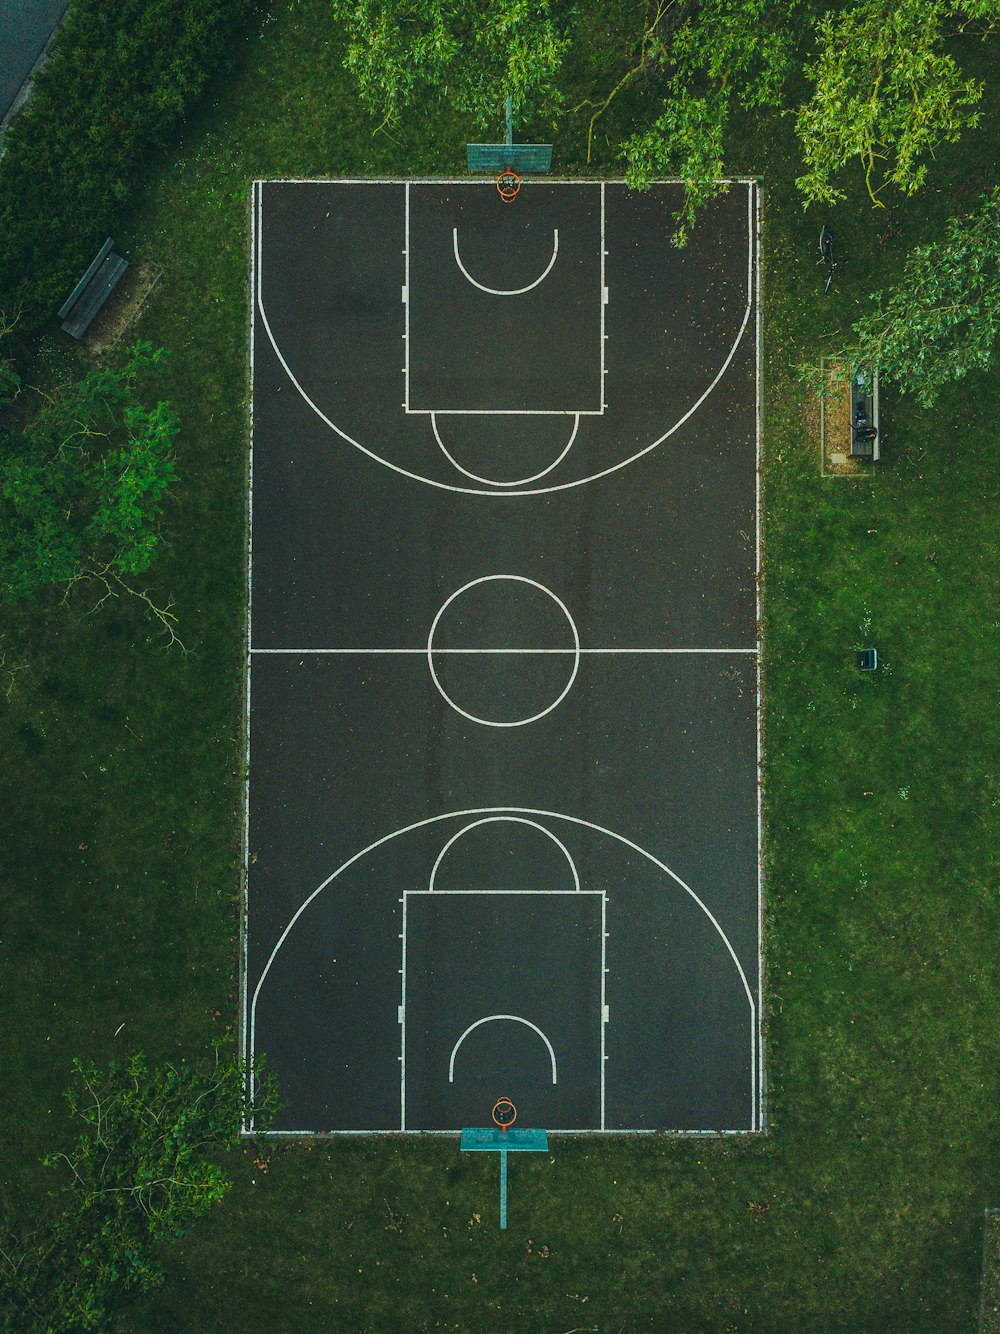 Basketballplatz zwischen Bäumen